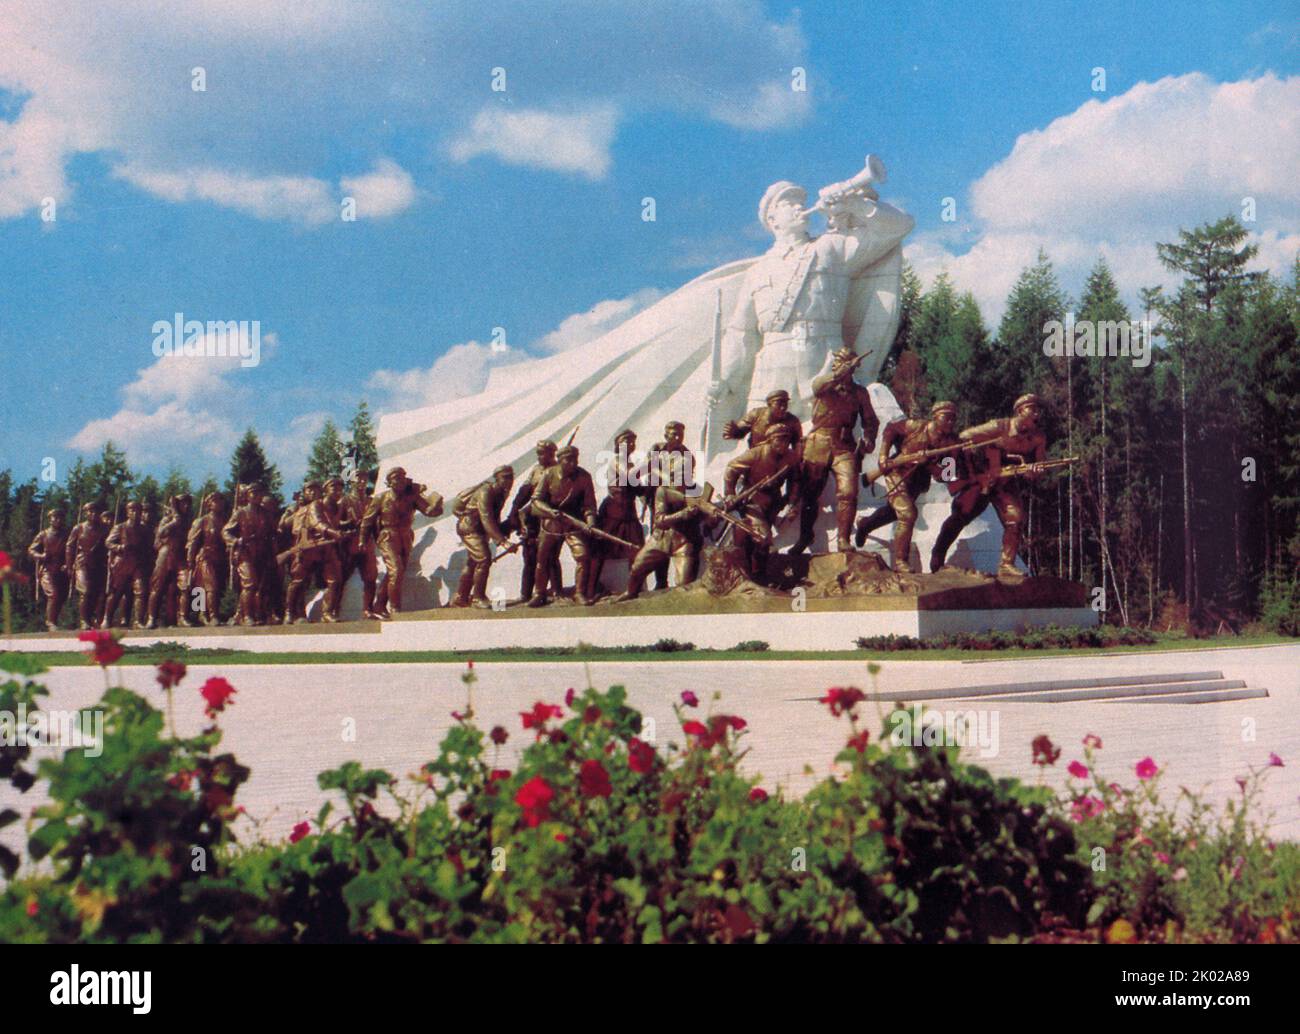 Gruppo scultoreo 'escursione'. Dal monumentale complesso scultoreo sulle rive del lago Samzhi, raffigurante i combattenti KPRA. Foto Stock